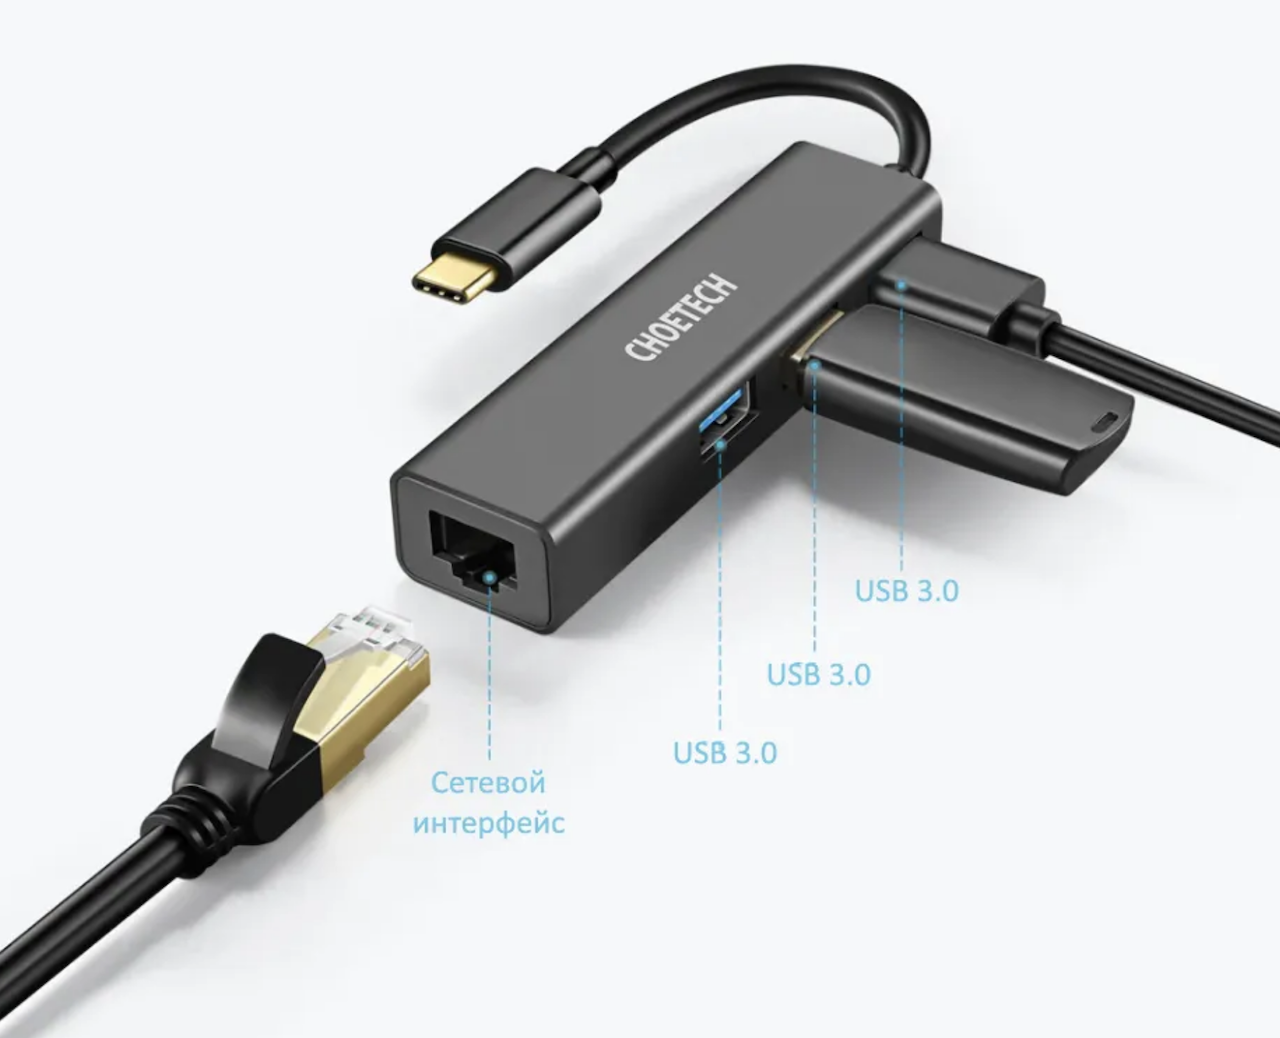 Адаптер - переходник USB Type-C / USB Type-A - RJ45 (LAN) до 100 Мбит/с, серый